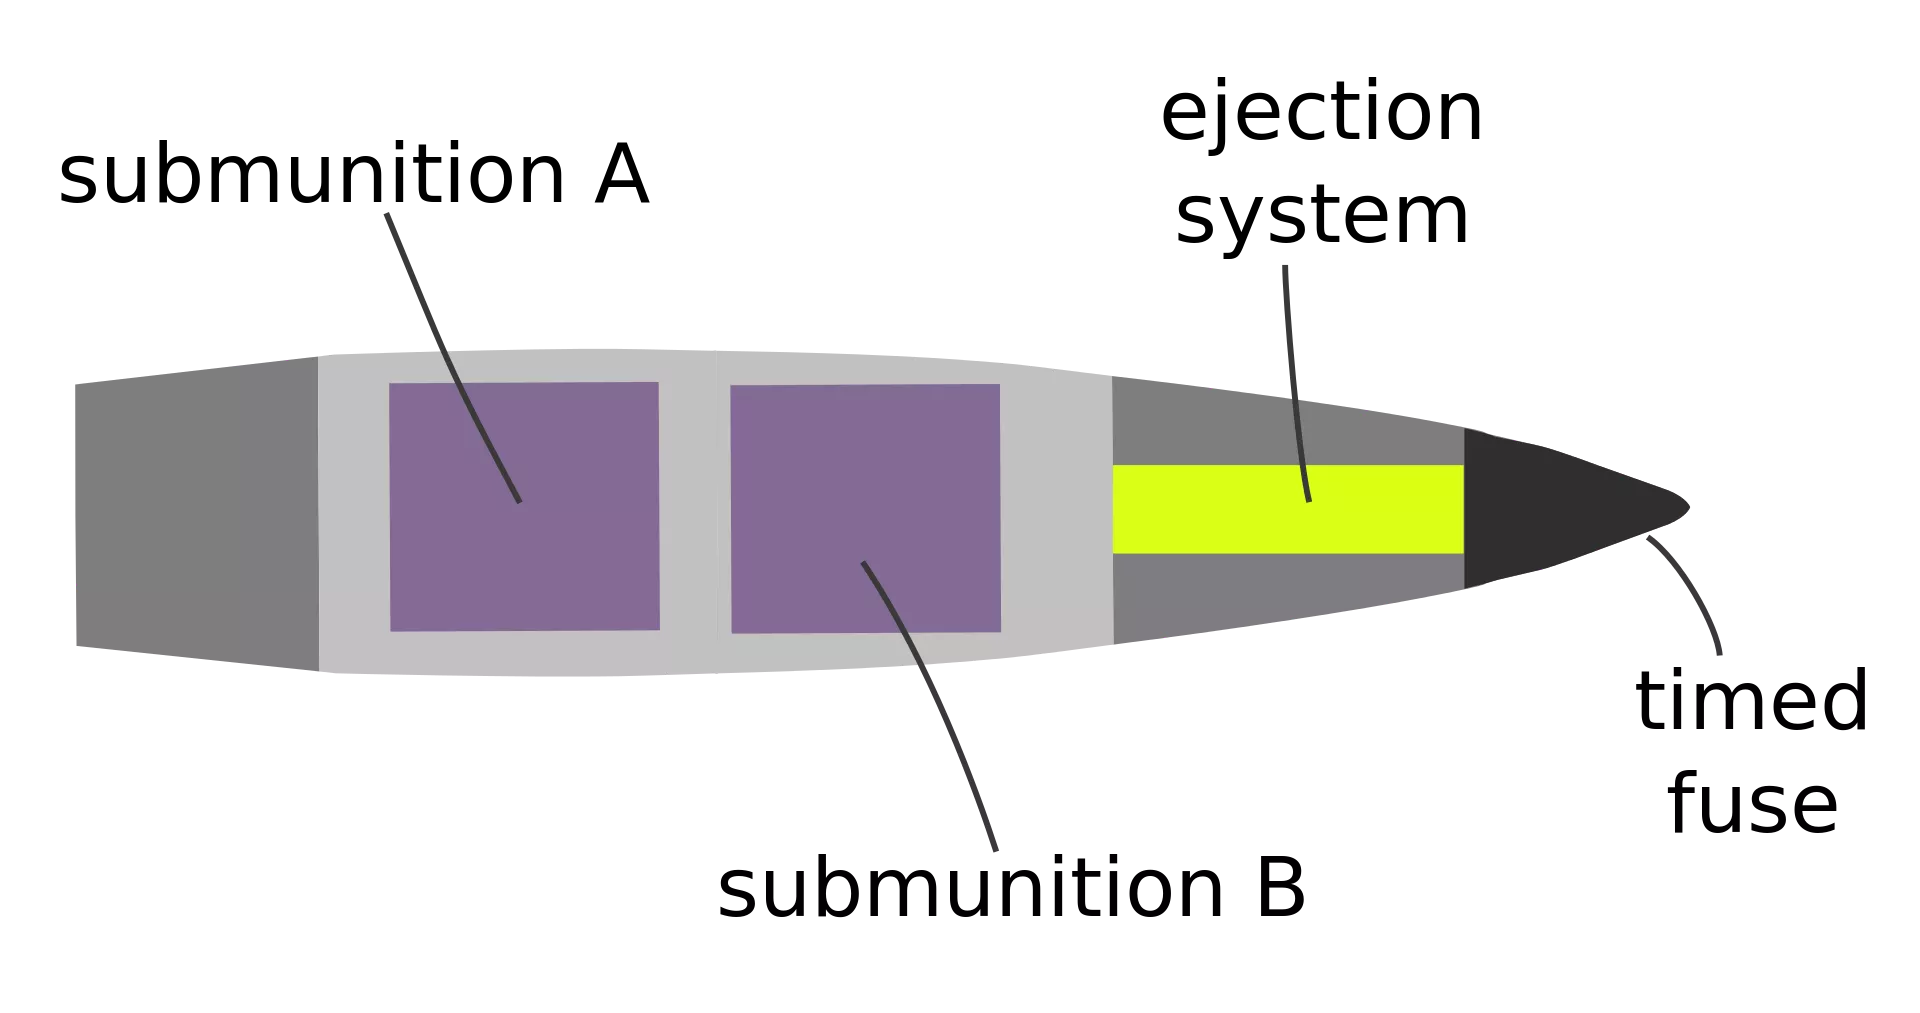 Снаряд SMArt 155. Фото – Википедия.